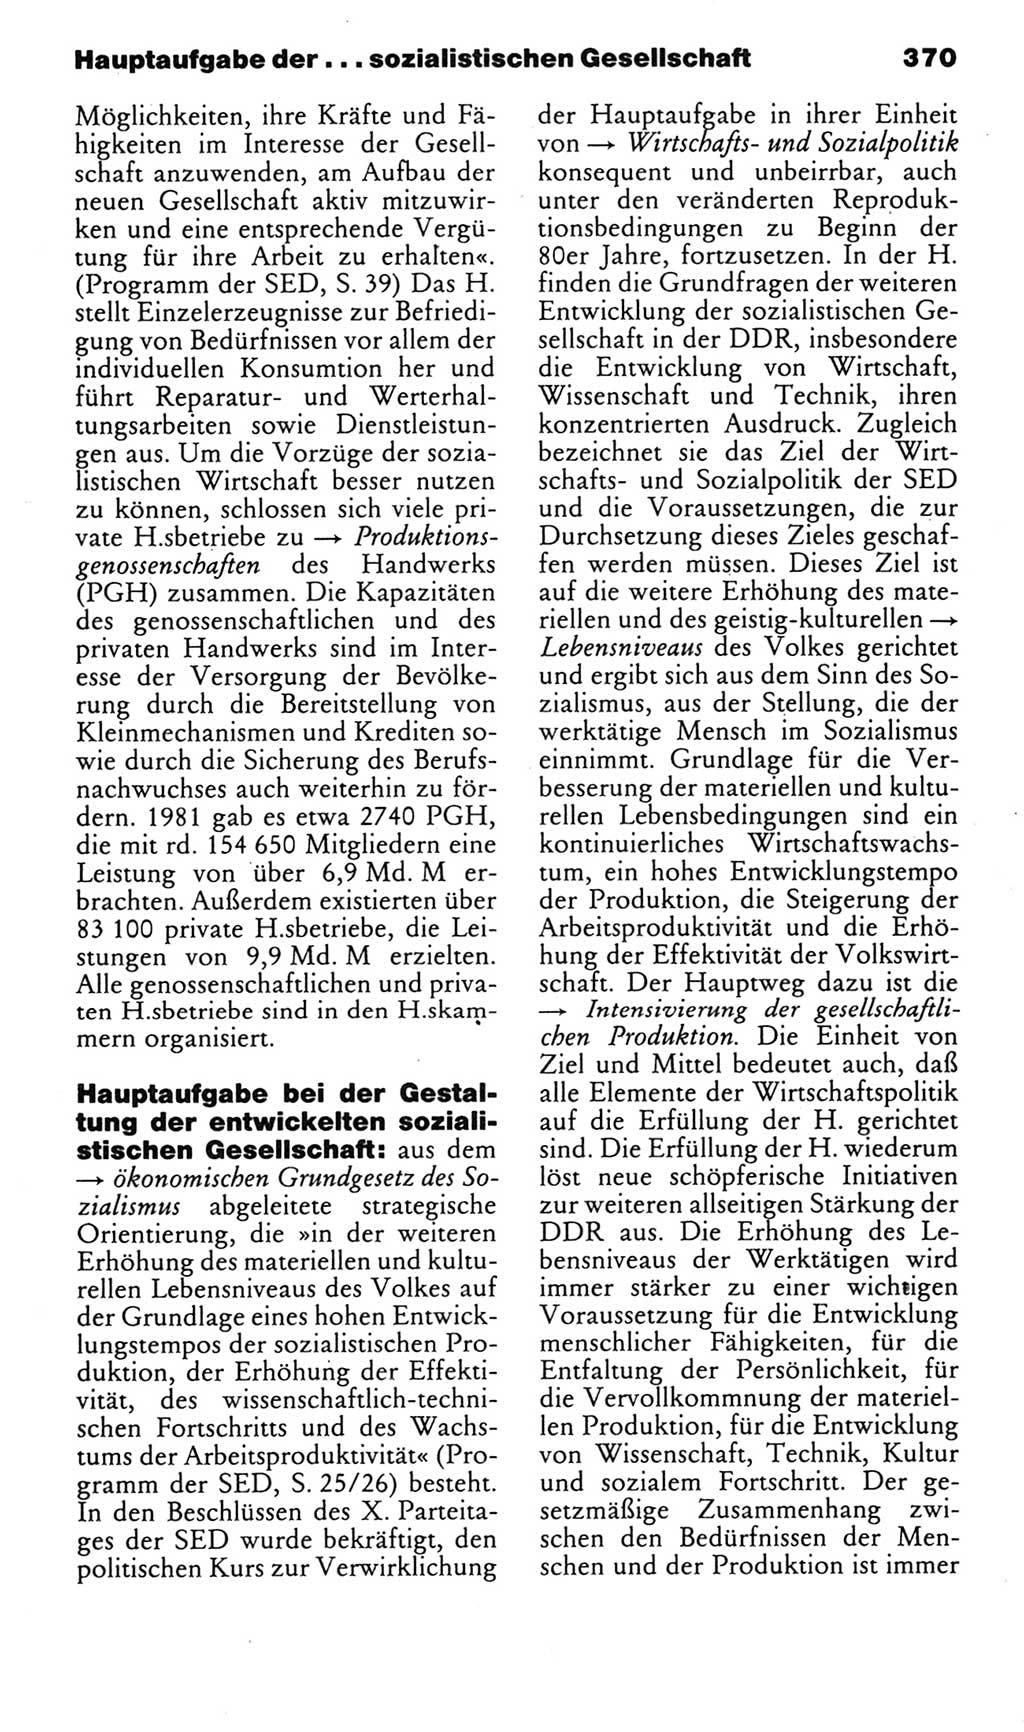 Kleines politisches Wörterbuch [Deutsche Demokratische Republik (DDR)] 1985, Seite 370 (Kl. pol. Wb. DDR 1985, S. 370)